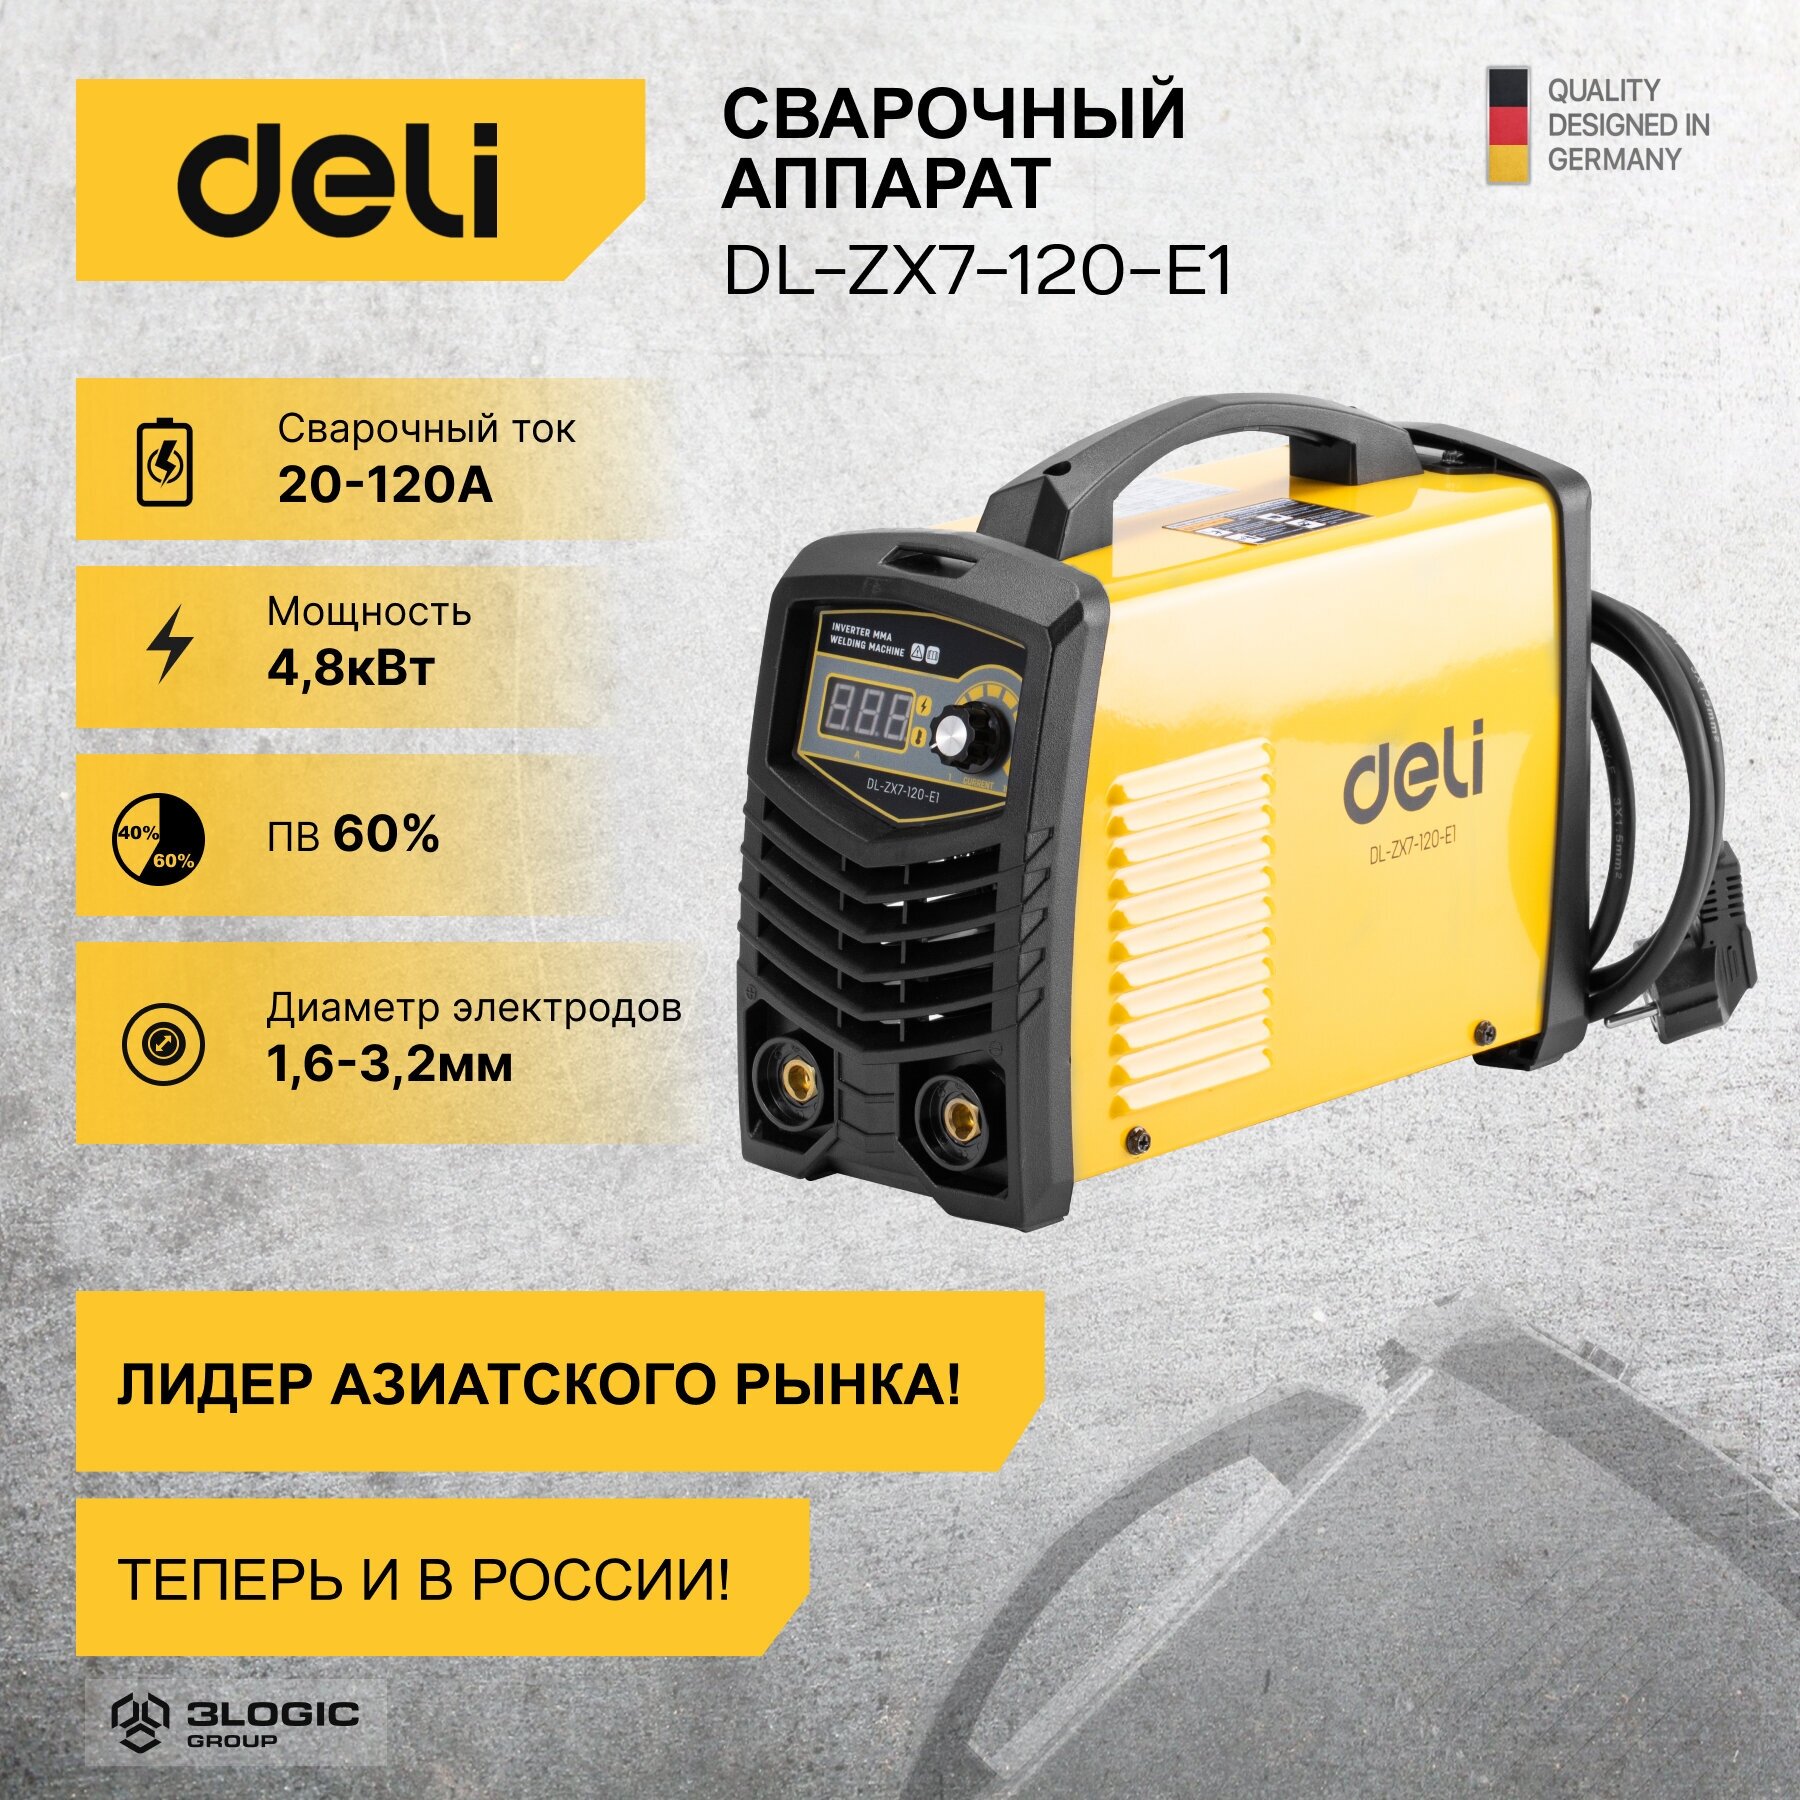 Сварочный аппарат инверторный Deli DL-ZX7-120-E1 (20-120А, 4,8кВт, ПВ 60%, диаметр электрода 1,6-3,2мм)